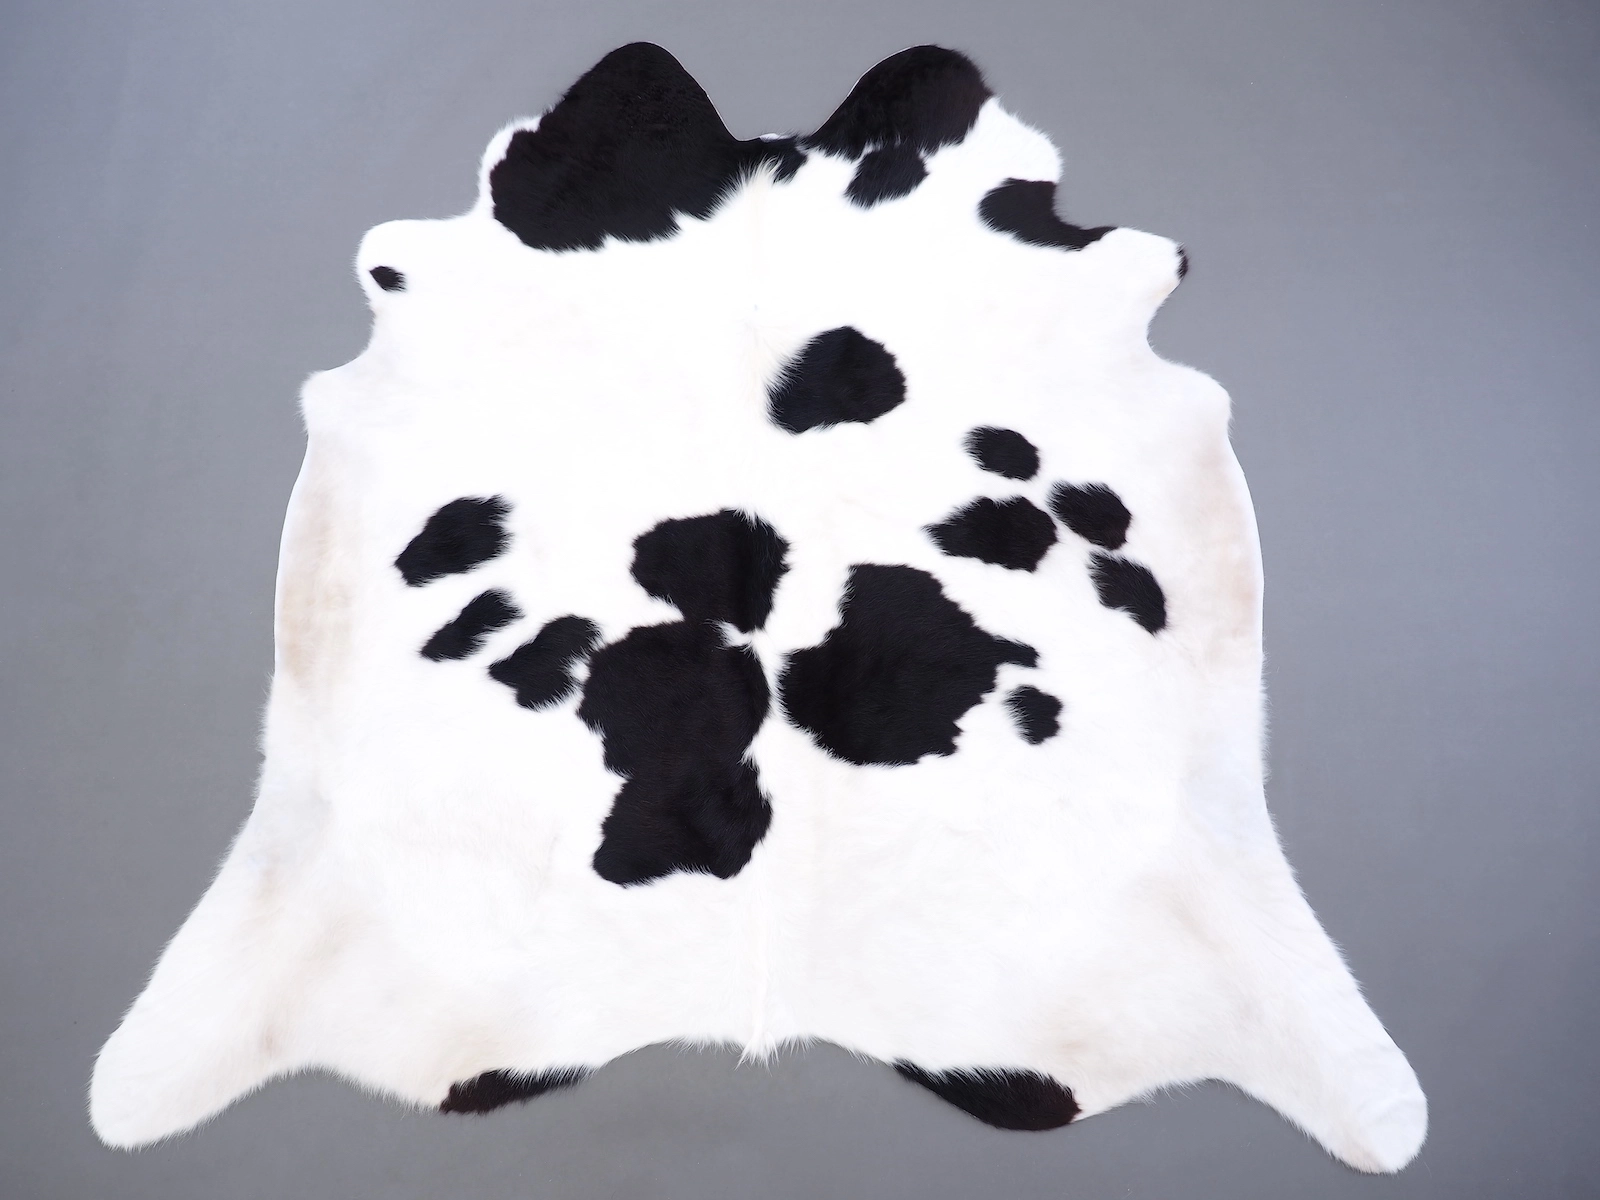 Шкура коровы натуральная на пол 30308 — купить по выгодной цене в интернет-магазине Cowhide